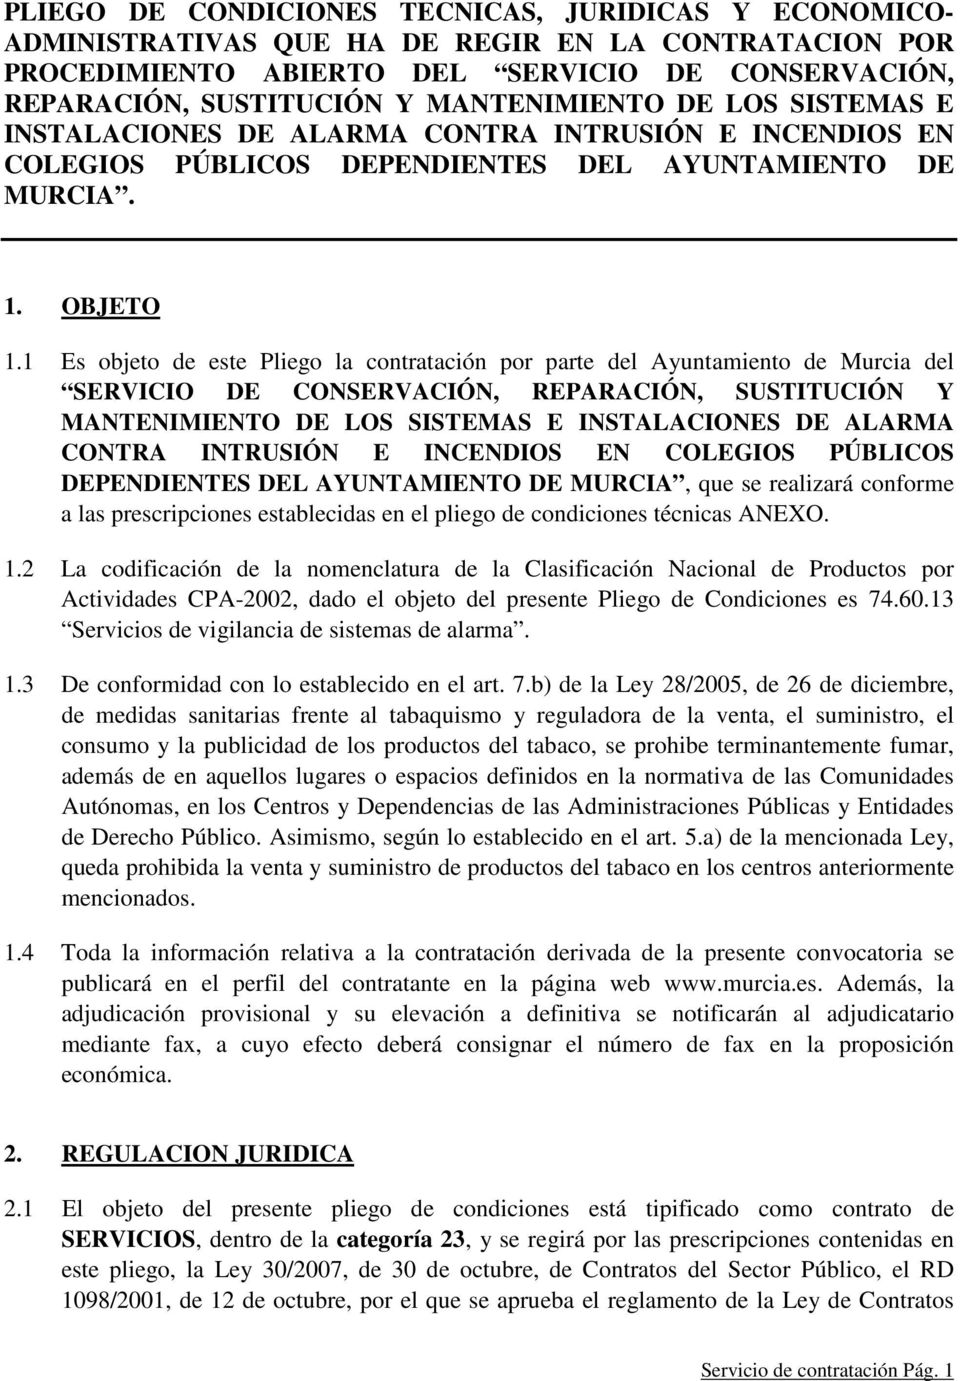 1 Es objeto de este Pliego la contratación por parte del Ayuntamiento de Murcia del SERVICIO DE CONSERVACIÓN, REPARACIÓN, SUSTITUCIÓN Y MANTENIMIENTO DE LOS SISTEMAS E INSTALACIONES DE ALARMA CONTRA